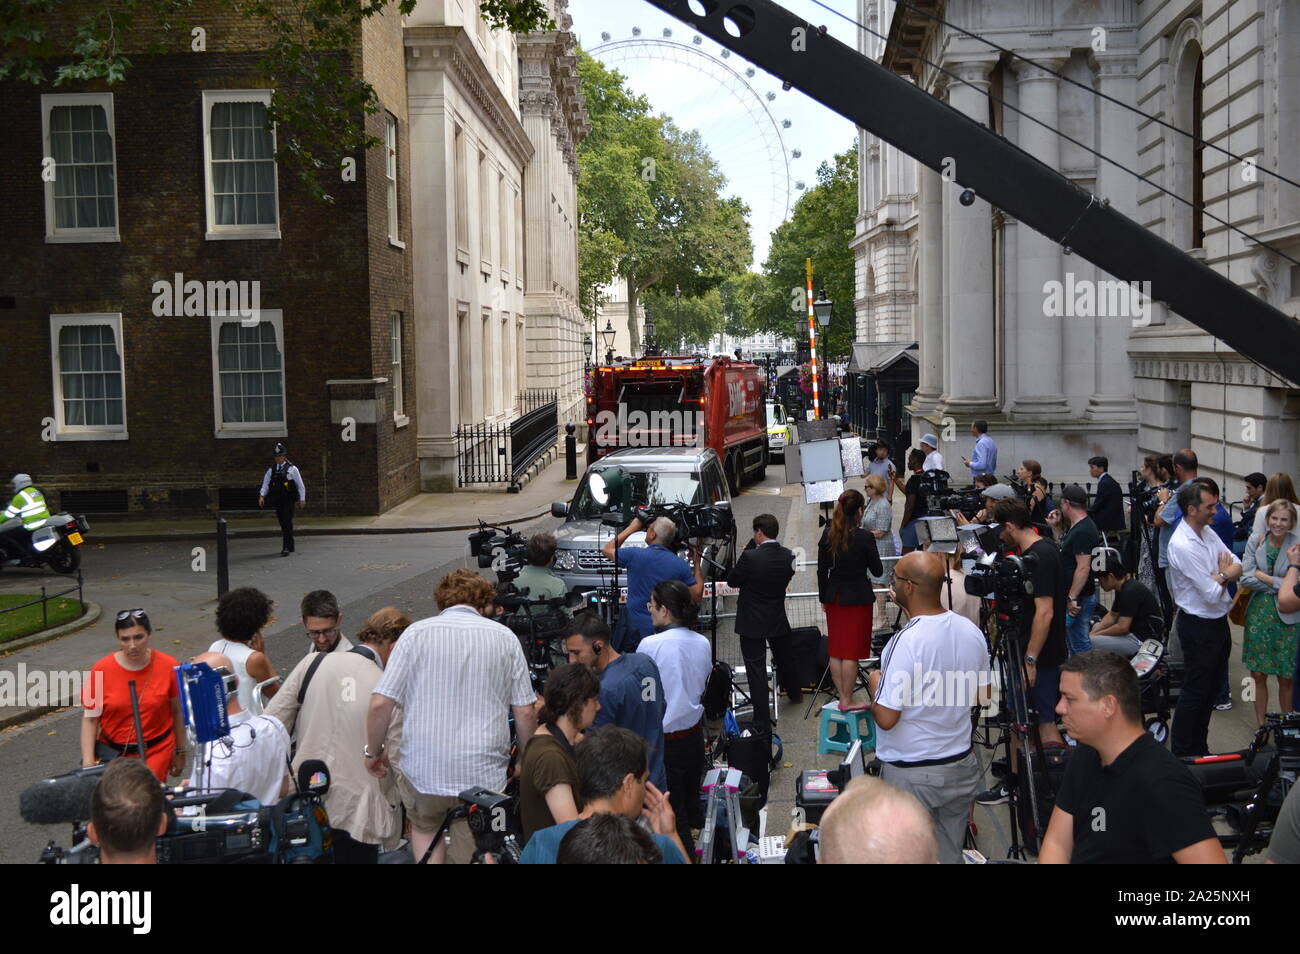 Basura (basura) camión llega en Downing Street en la mañana de la dimisión de theresa mayo como primer ministro británico. El 24 de julio de 2019 Foto de stock